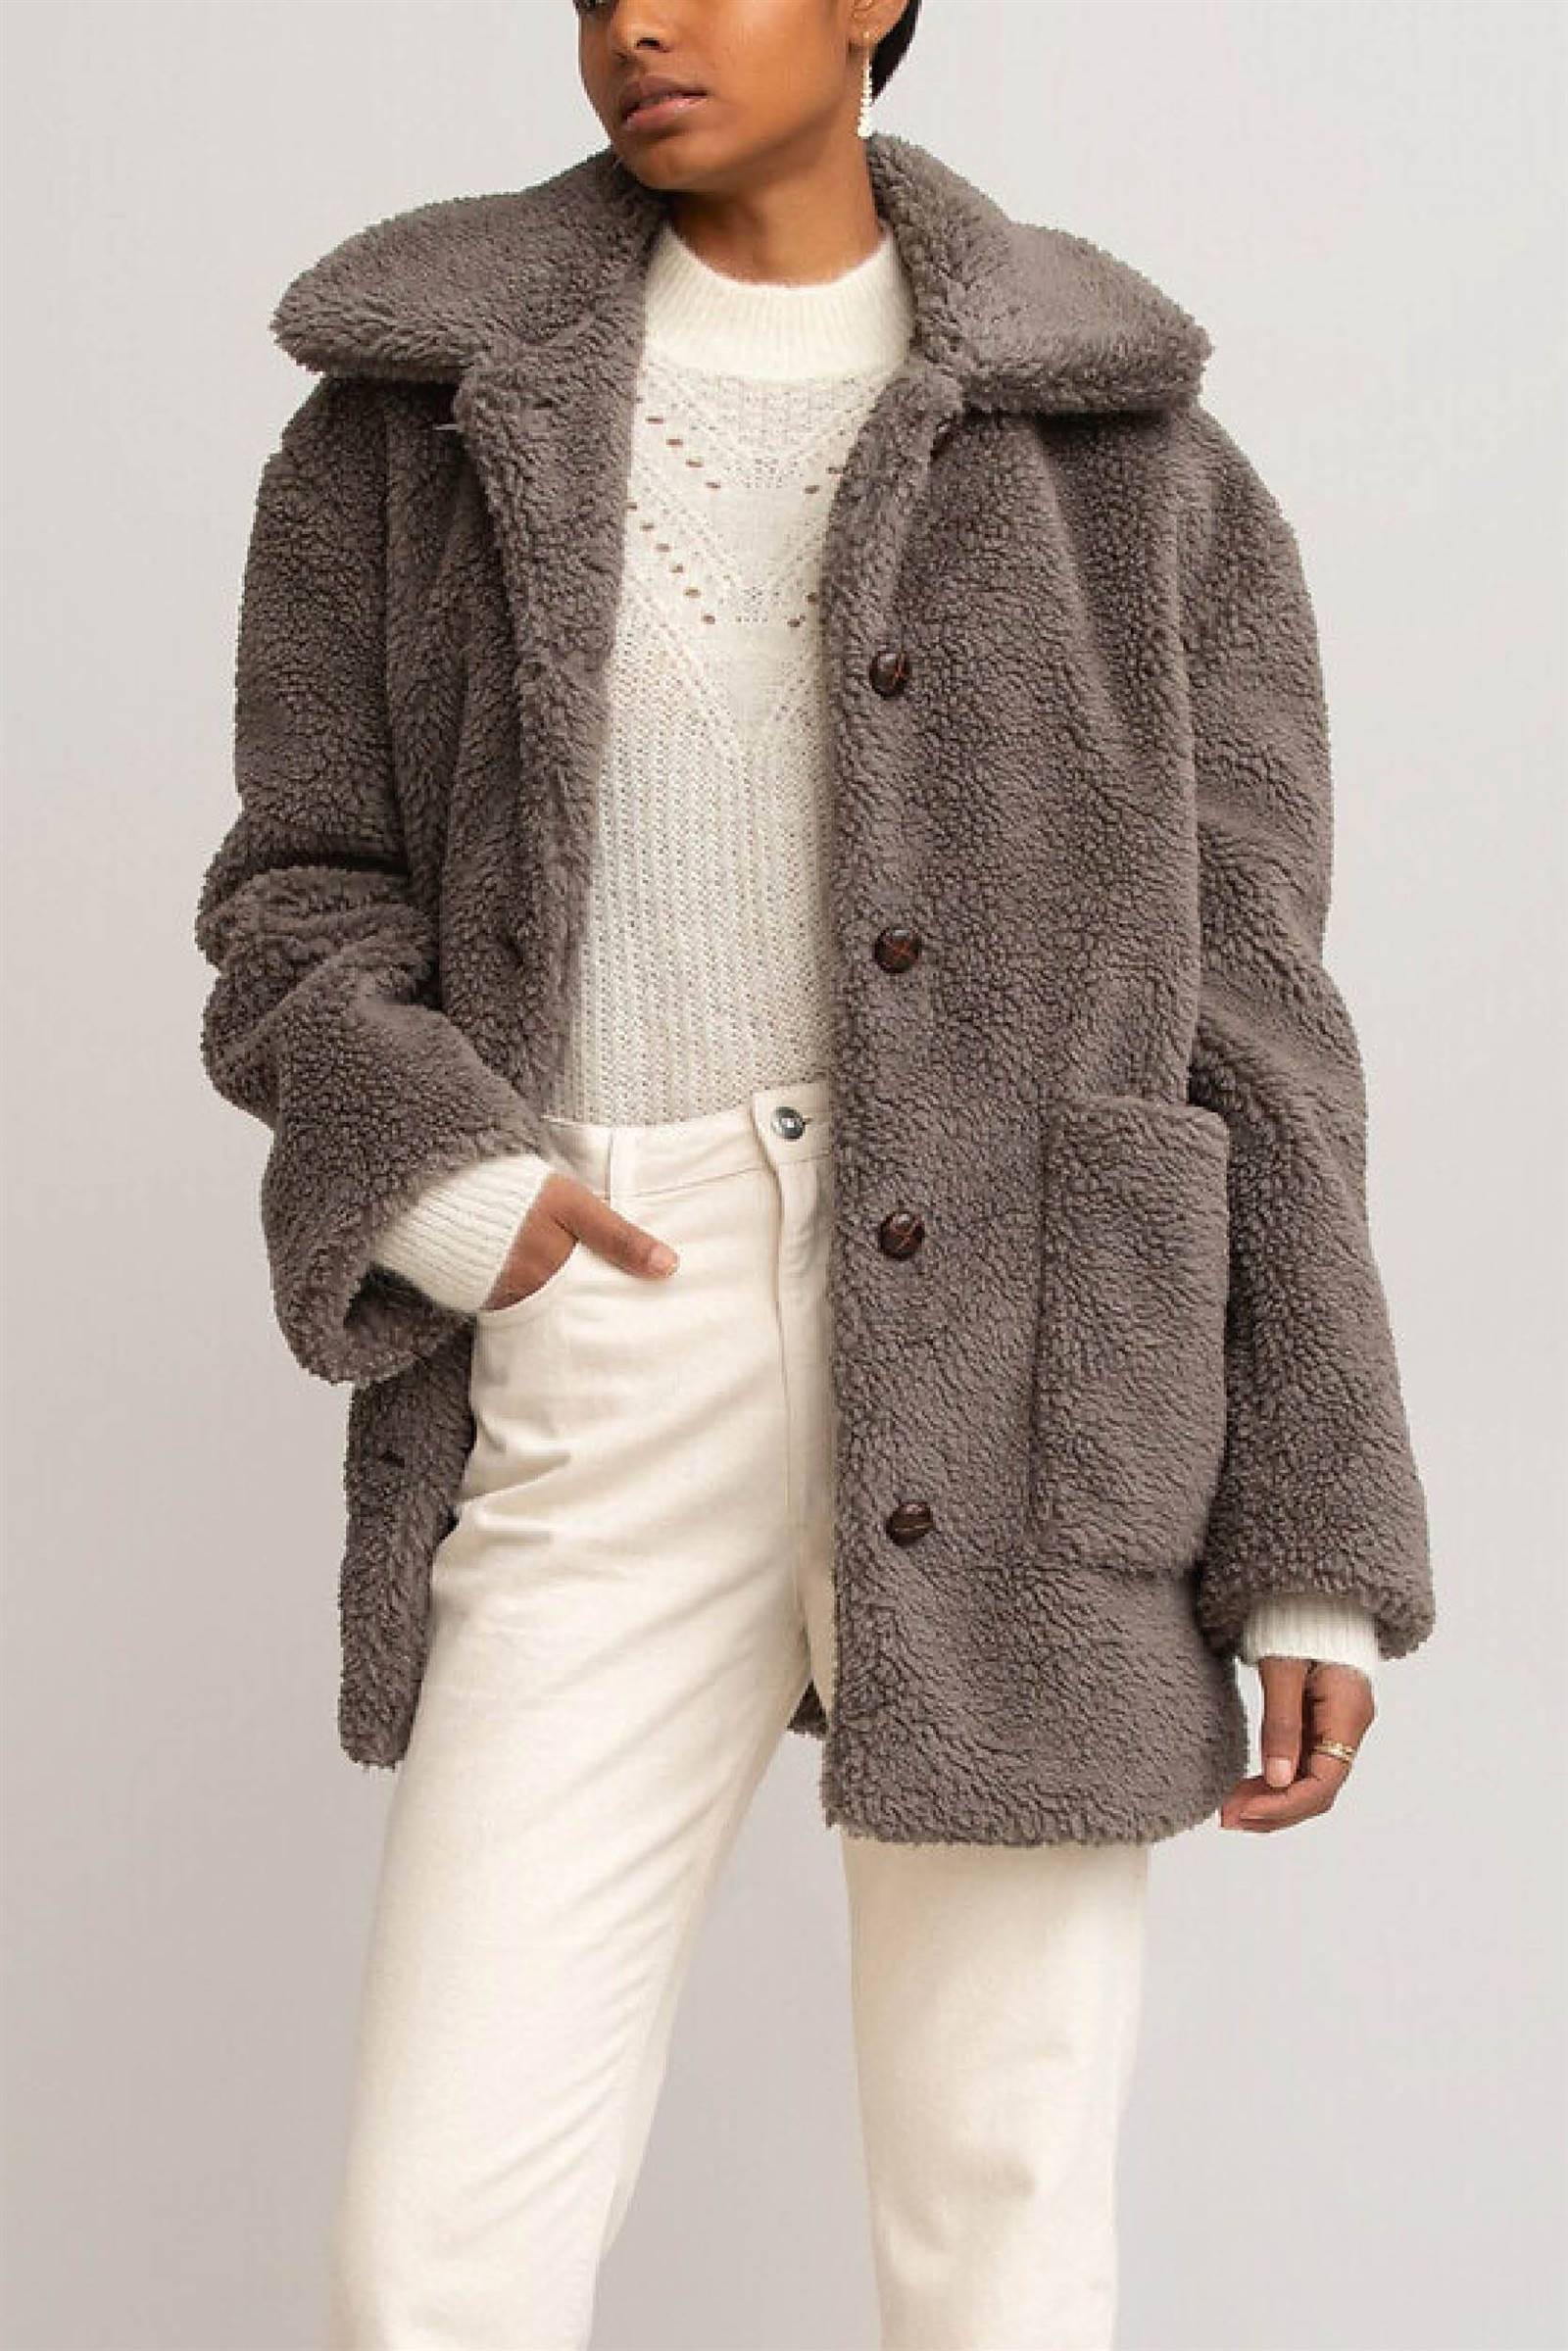 abrigos teddy borrego invierno4. Abrigo con botones de color gris